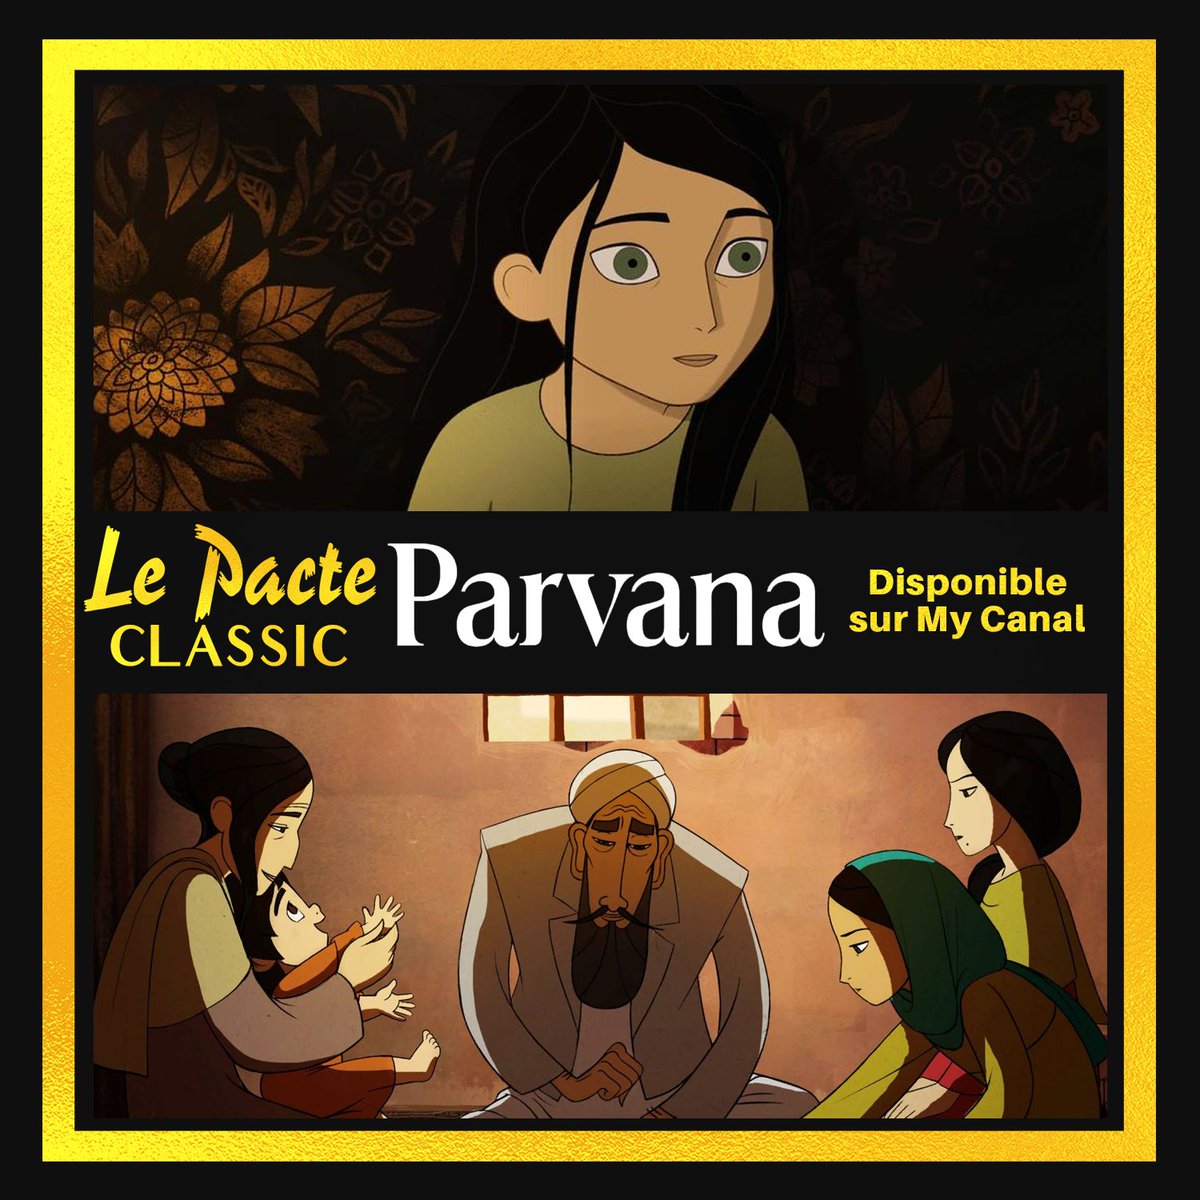 JOUR 28.(Re)découvrez le sublime film d'animation  #Parvana, de Nora Twomey et avec la voix de  @Golshifteh. Le quotidien d'une enfant en Afghanistan sous le régime taliban. Bouleversant !  #LePacteClassic  #CONFINEMENTJOUR27Disponible sur  @mycineplus   https://bit.ly/LP_Parvana 